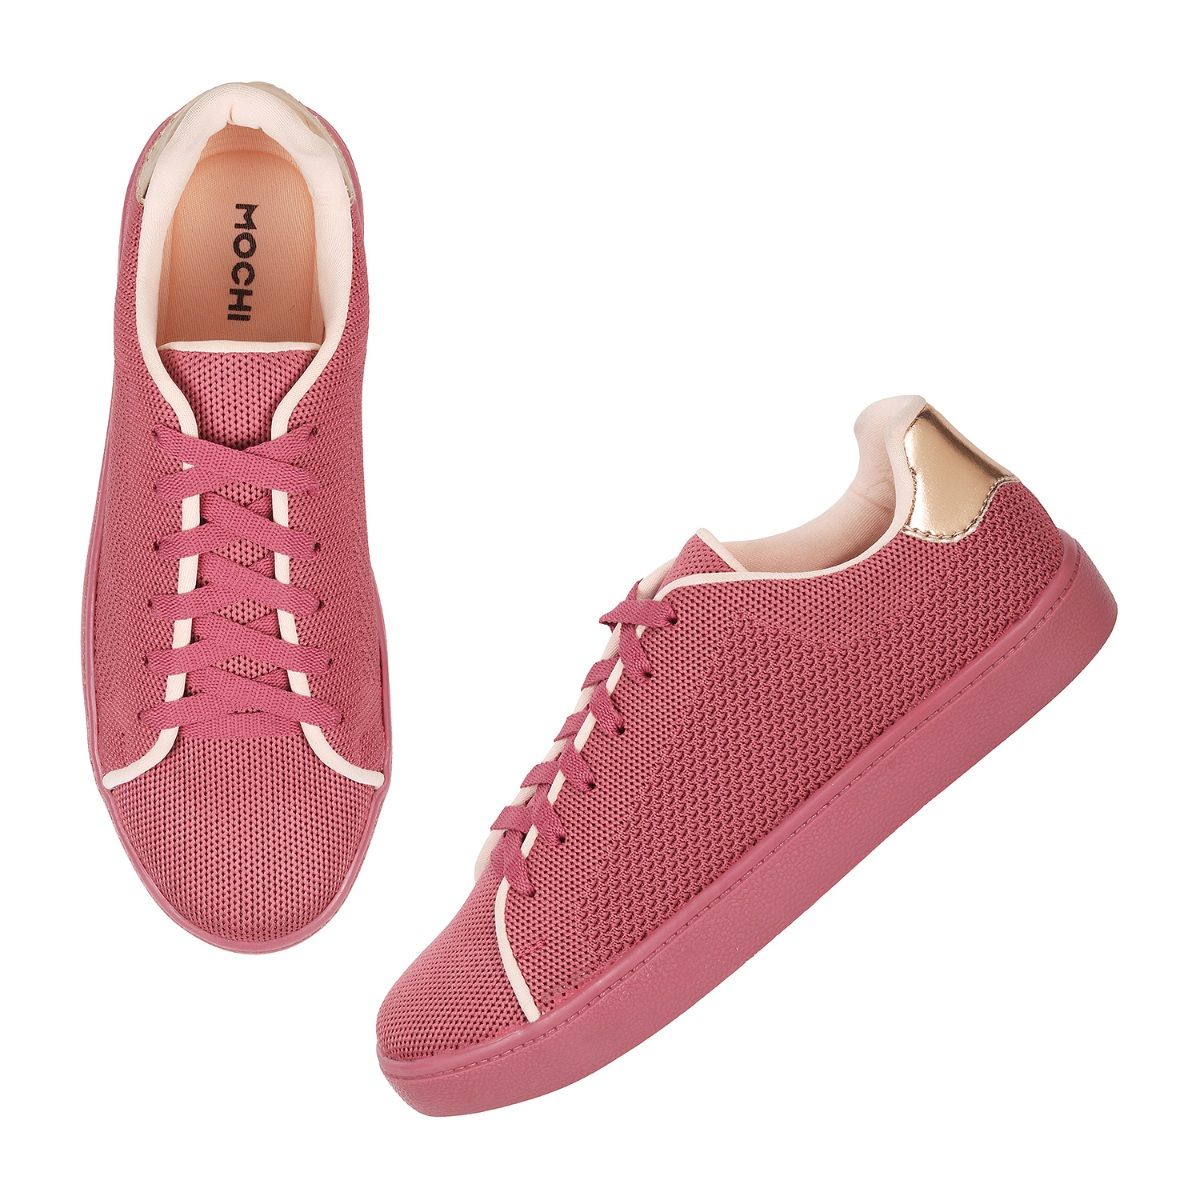 Buy Mochi Men White Synthetic Flat Shoes (71-9683-16-39) Size (5 UK/India  (39EU)) at Amazon.in